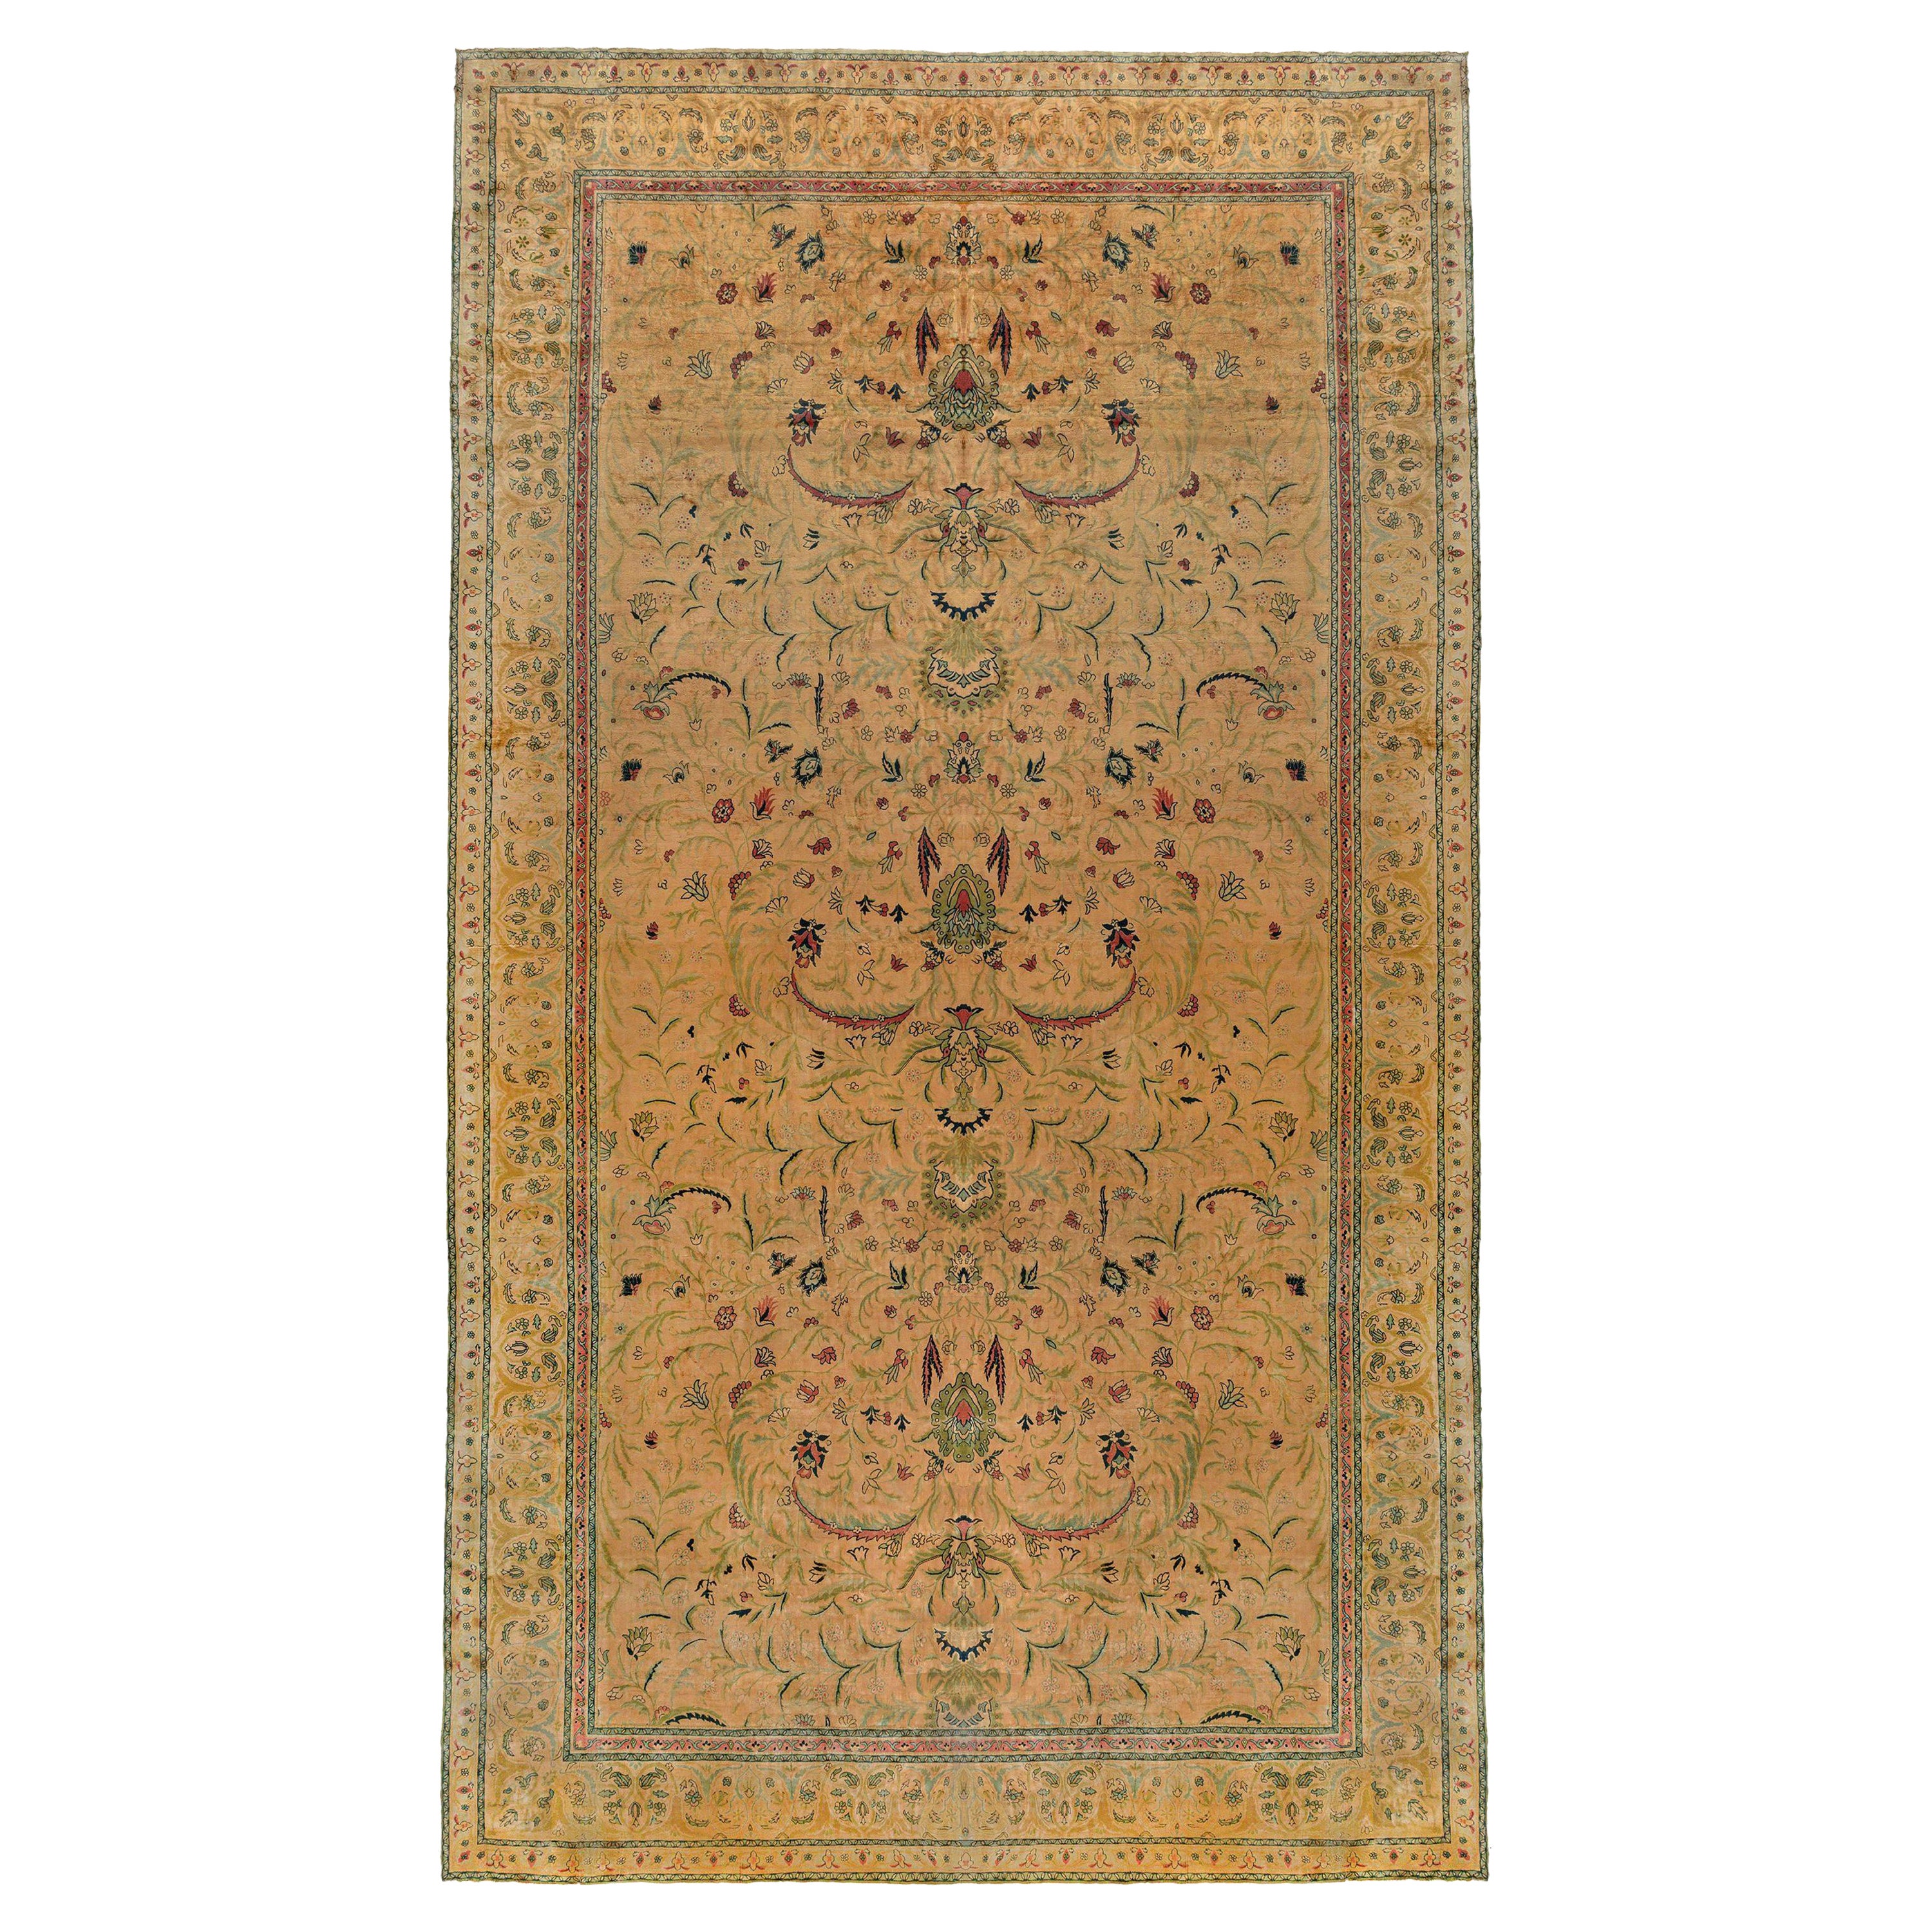 Oversized Antique Indian Handmade Rug Size Adjusted For Sale